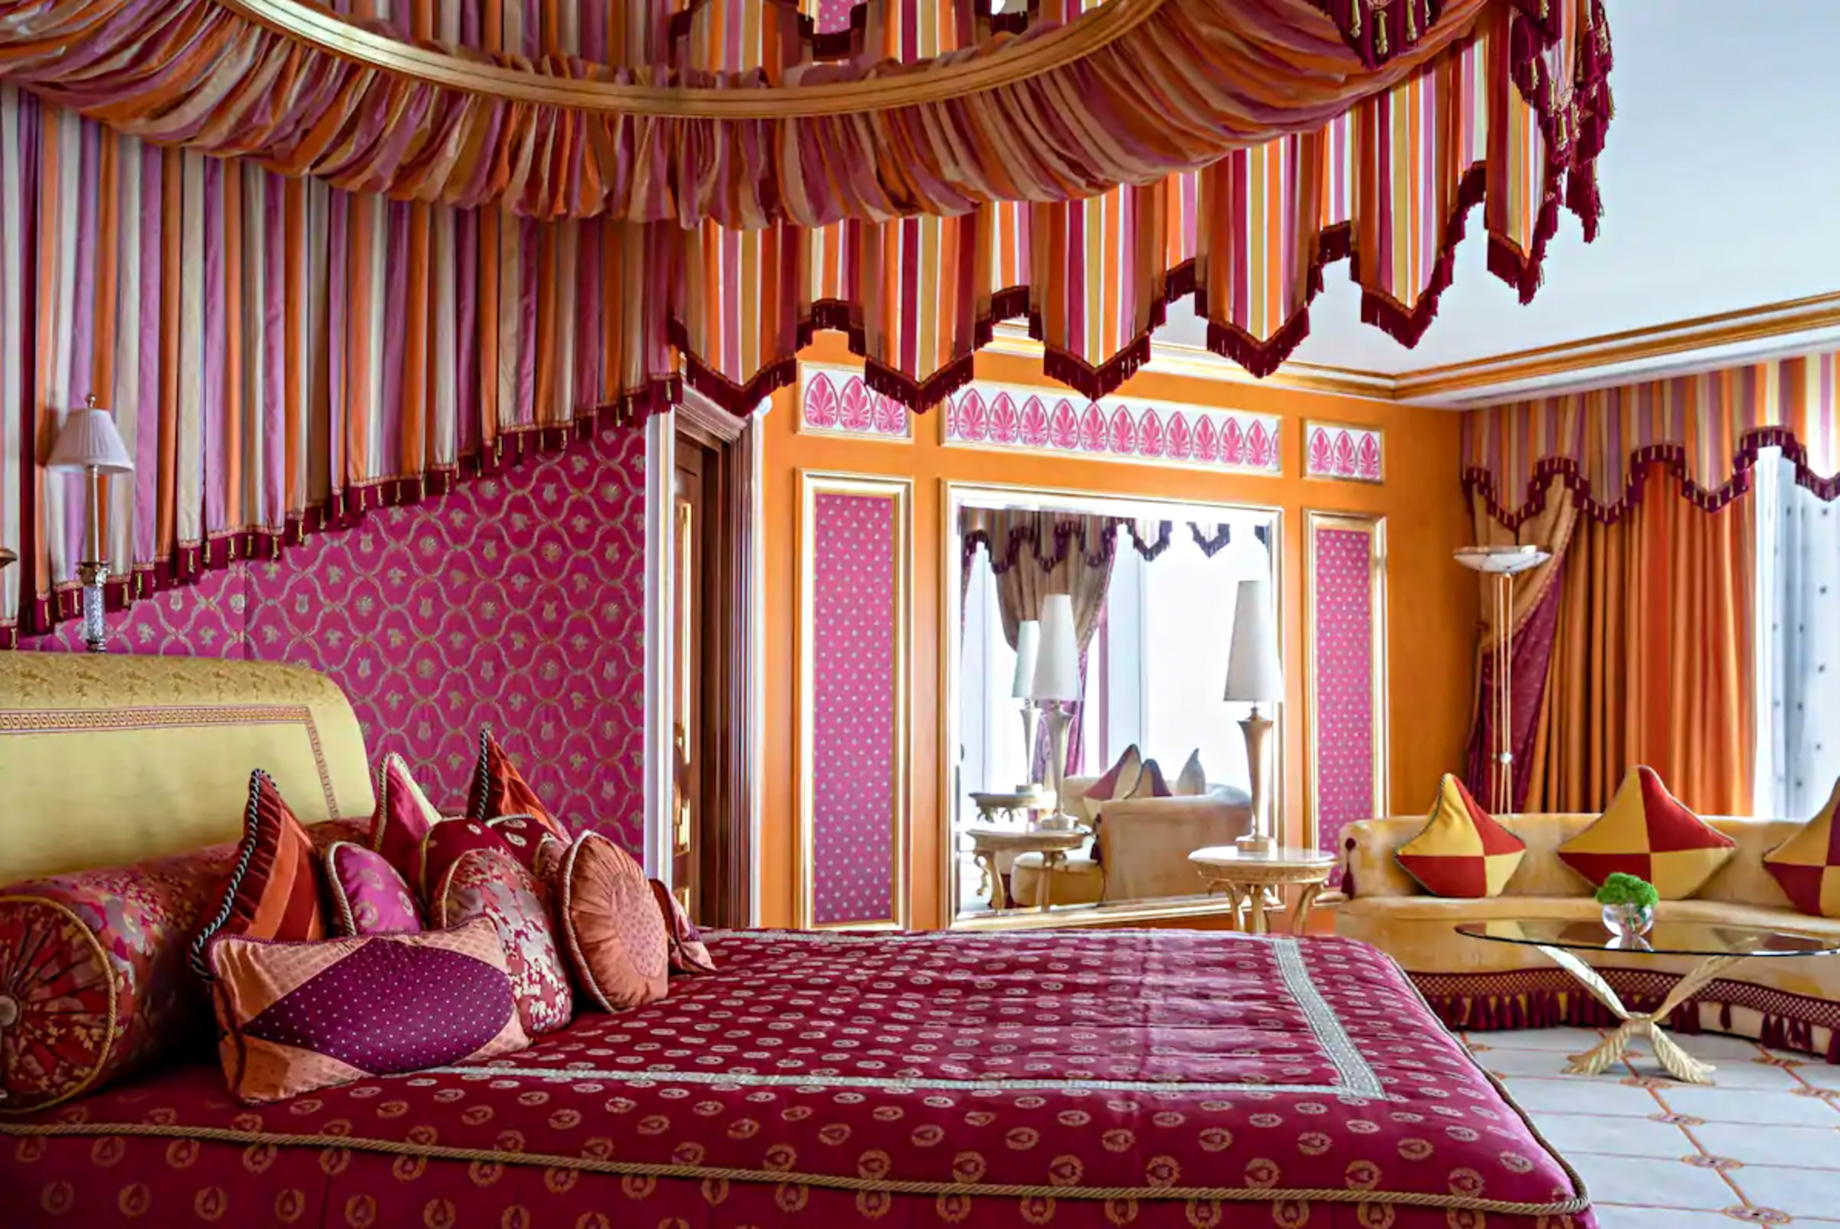 Burj Al Arab Jumeirah Hotel – Dubai, UAE – Royal Suite Bedroom